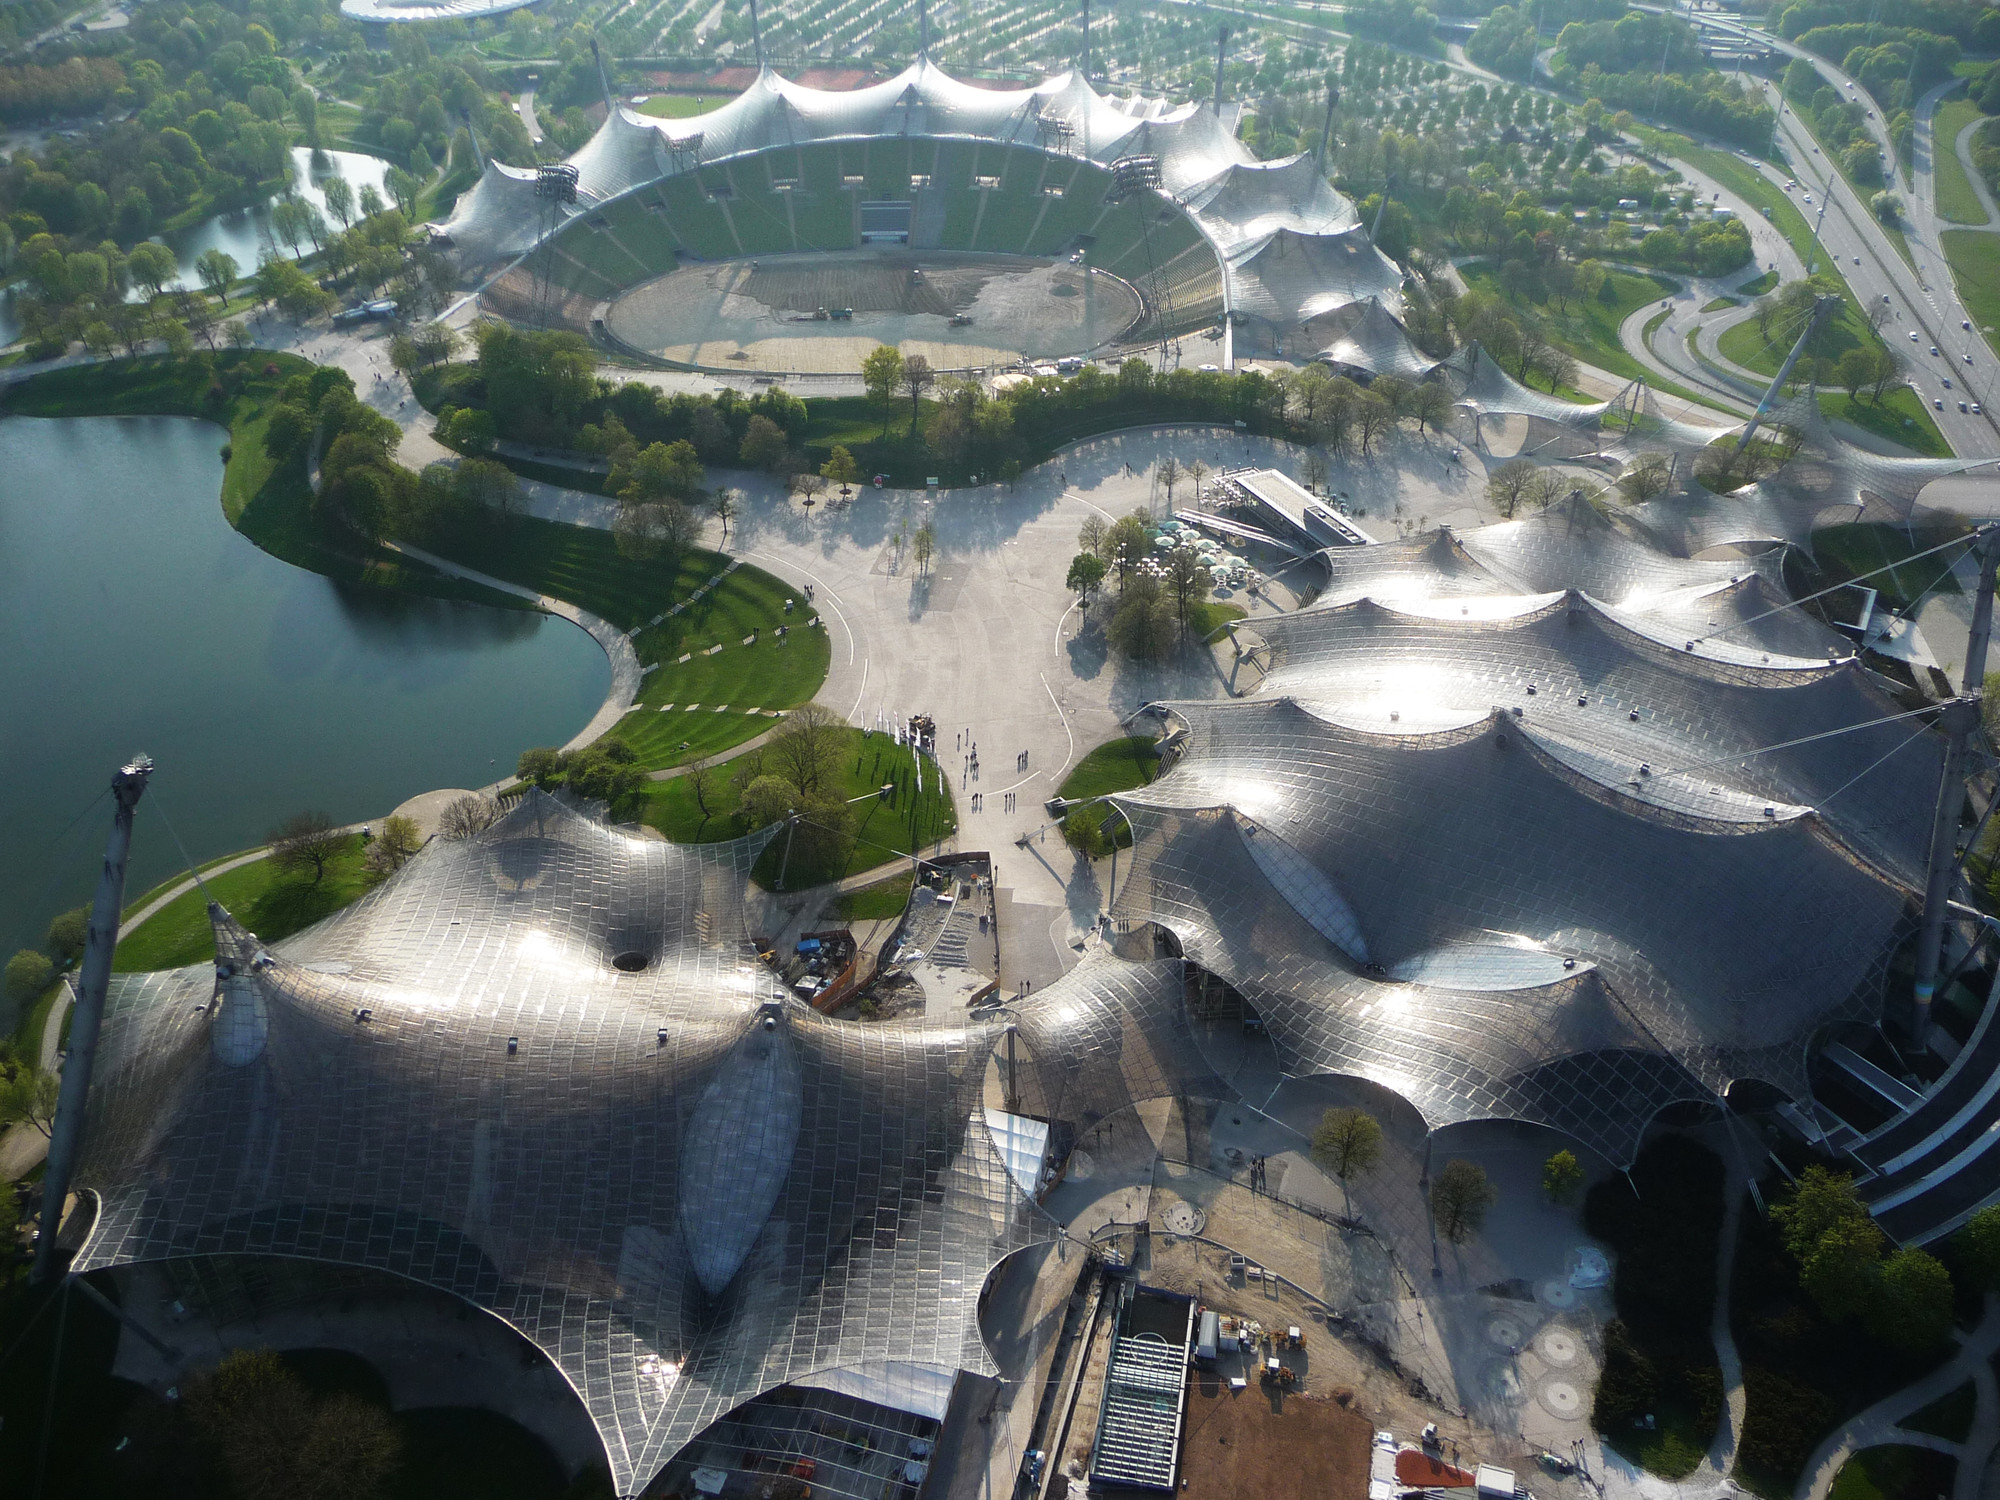 Фрай Пауль Отто занимался проектированием спортивных объектов для Олимпийских игр 1972 года в Мюнхене. Результатом стала натяжная крыша над плавательным бассейном, спортивным залом и главным стадионом. В 2015 году за это сооружение Отто посмертно стал 40-м лауреатом Притцкеровской премии
